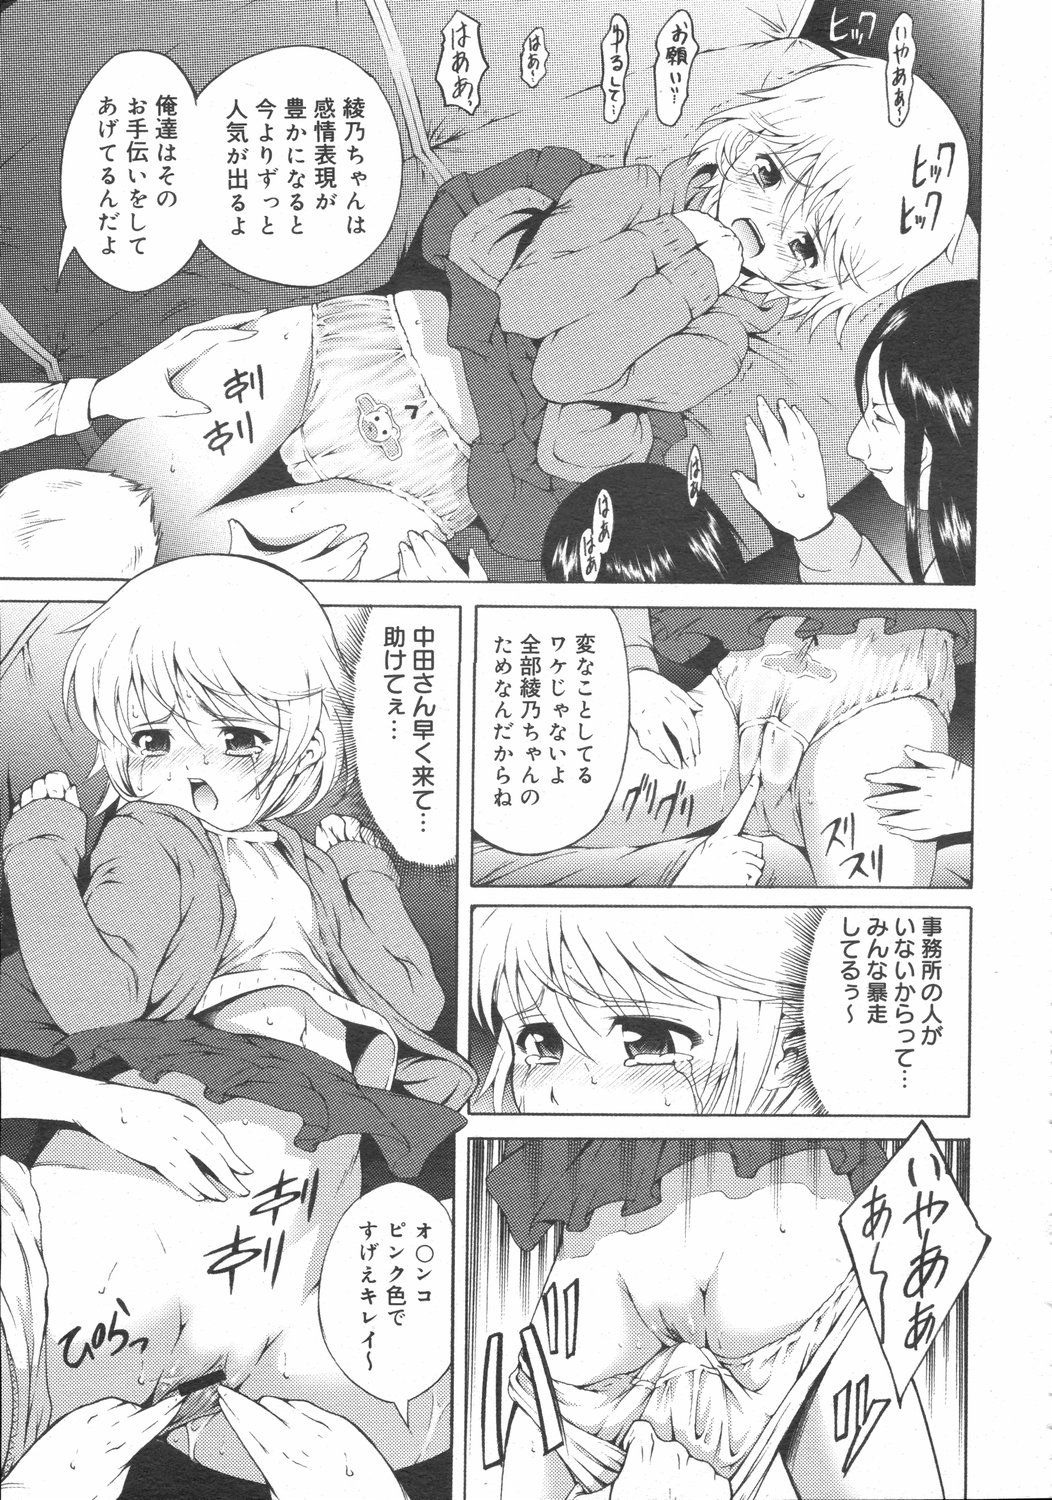 Idol no jyouken page 5 full